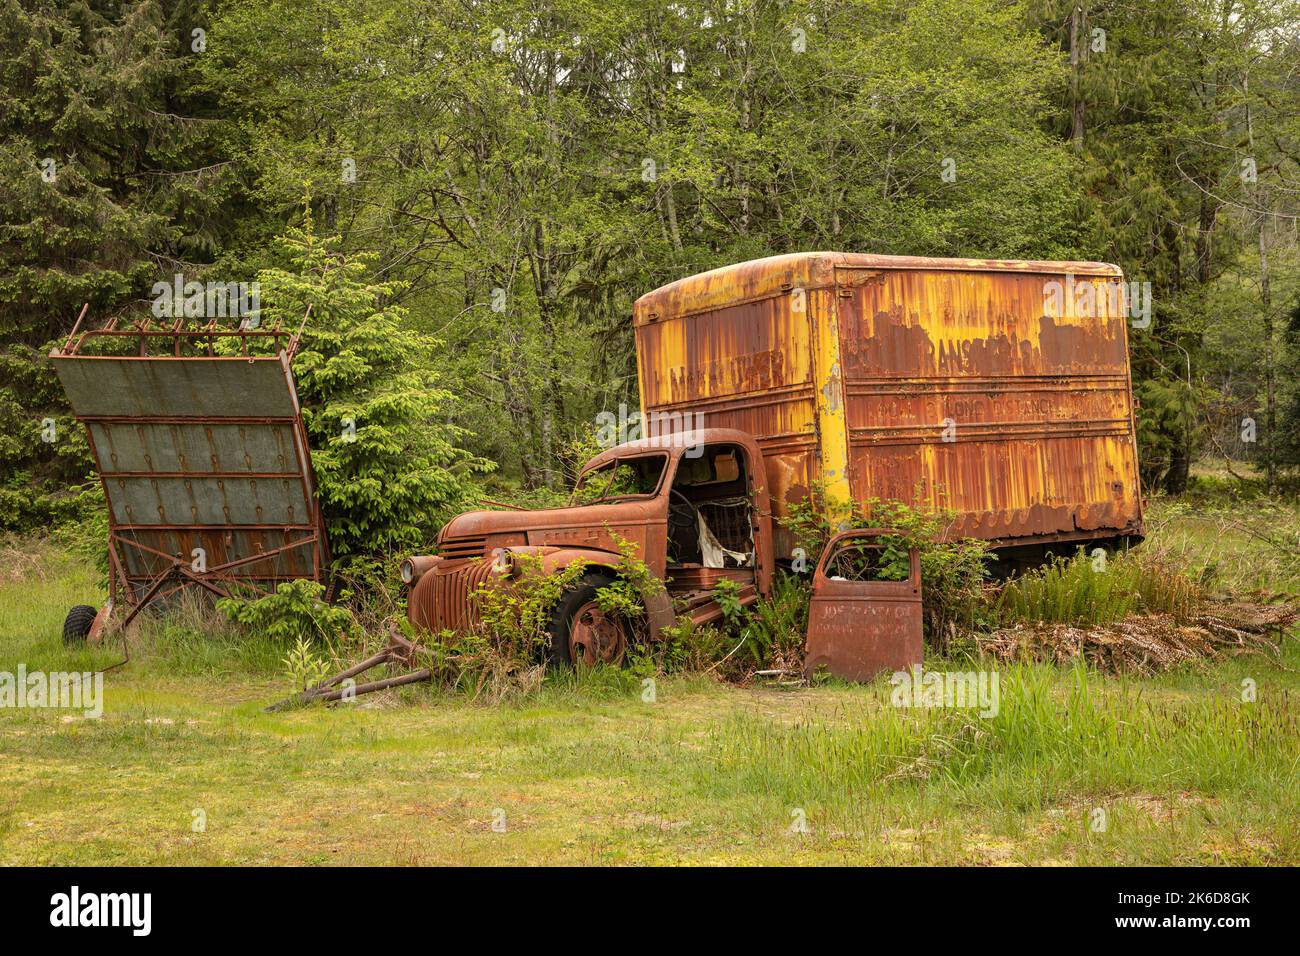 WA22250-00..WASHINGTON - Old, camion consegna, in mostra presso la storica Kestner Homestead nella foresta pluviale Quinault del Parco Nazionale Olimpico. Foto Stock